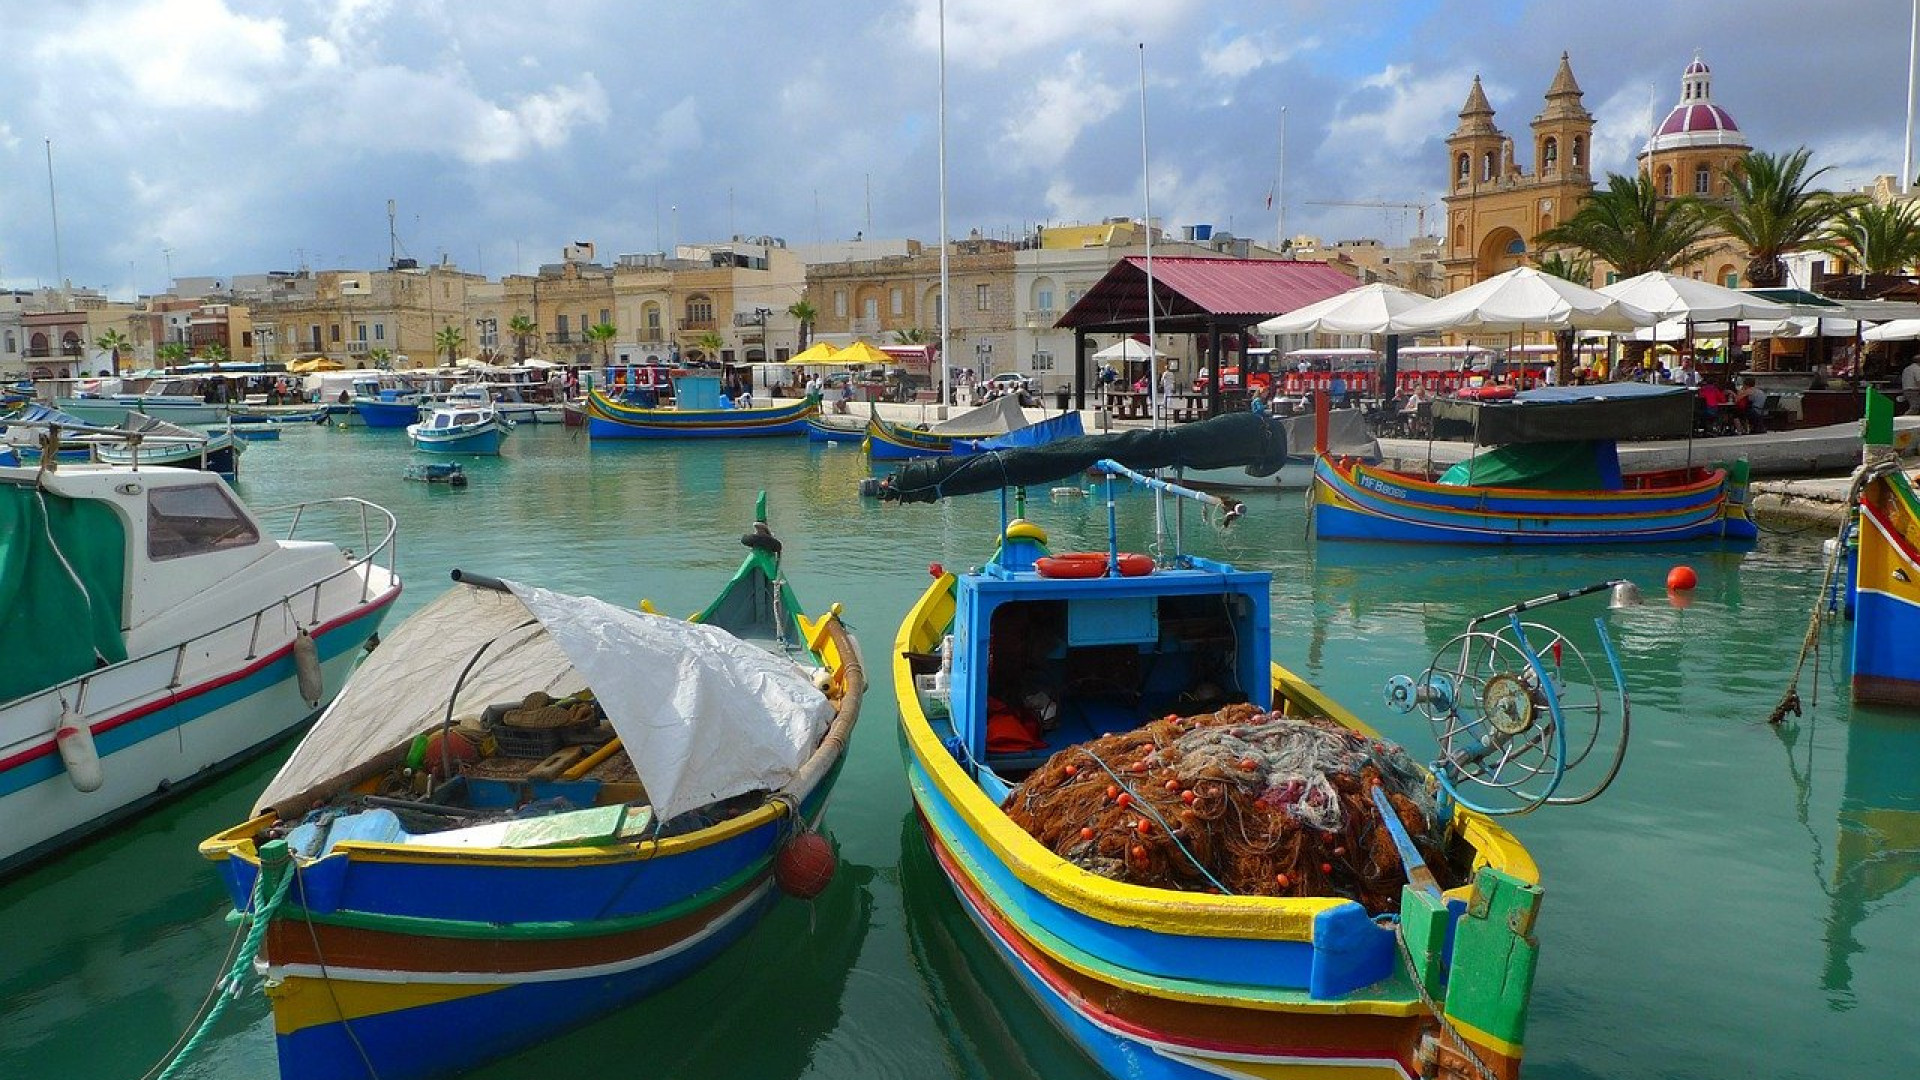 Malta, Sicilien og Sardinien: tre juveler i Middelhavet at opdage